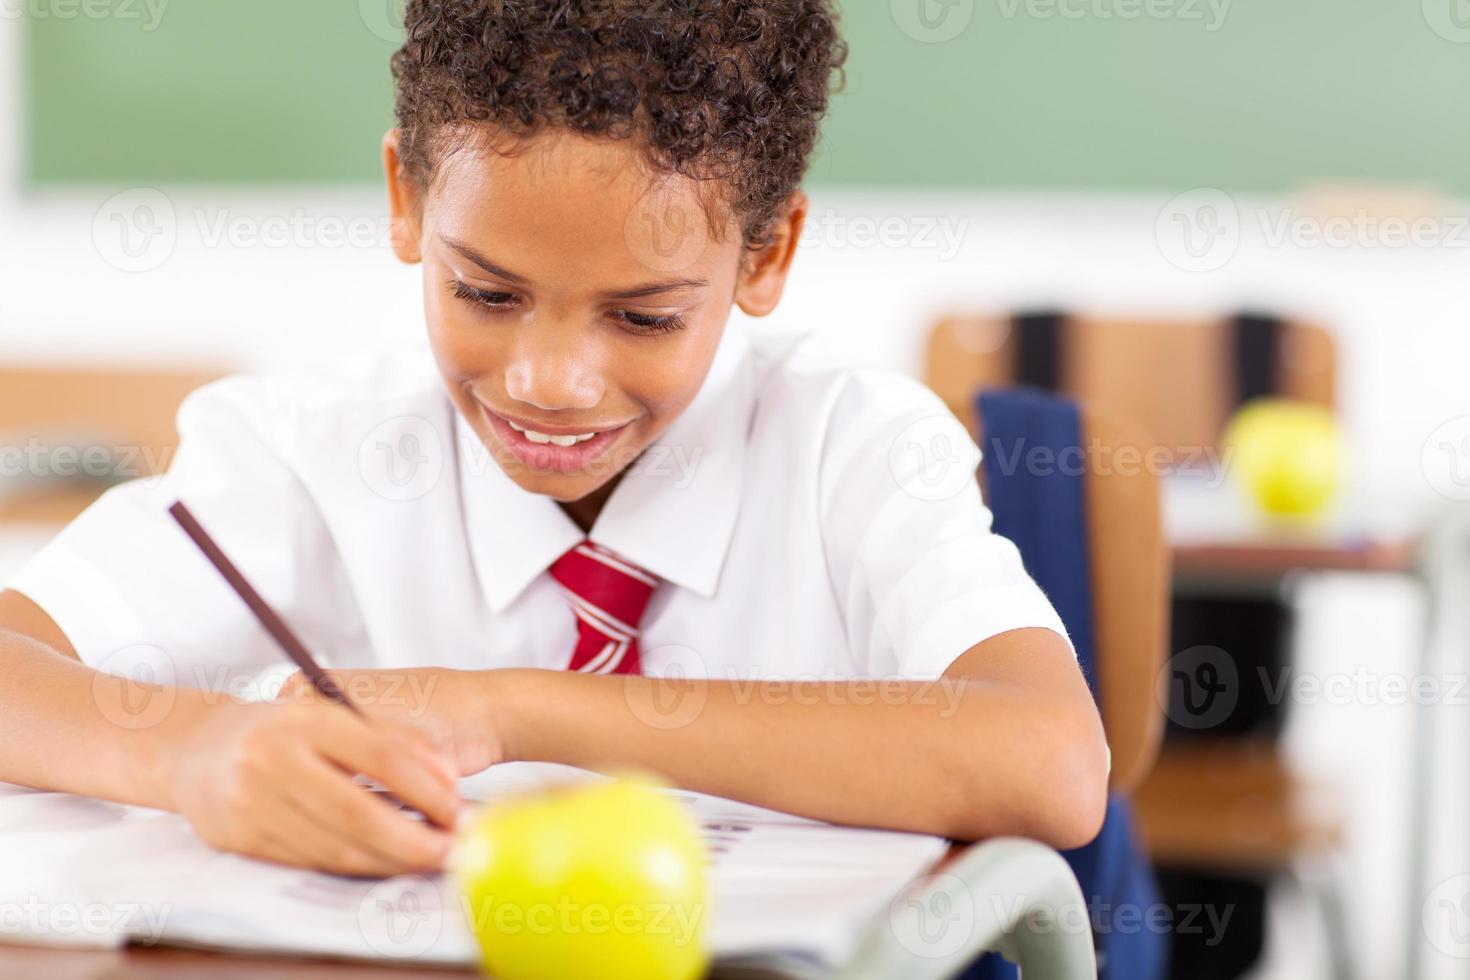 grundskolepojke som skriver klassarbete foto